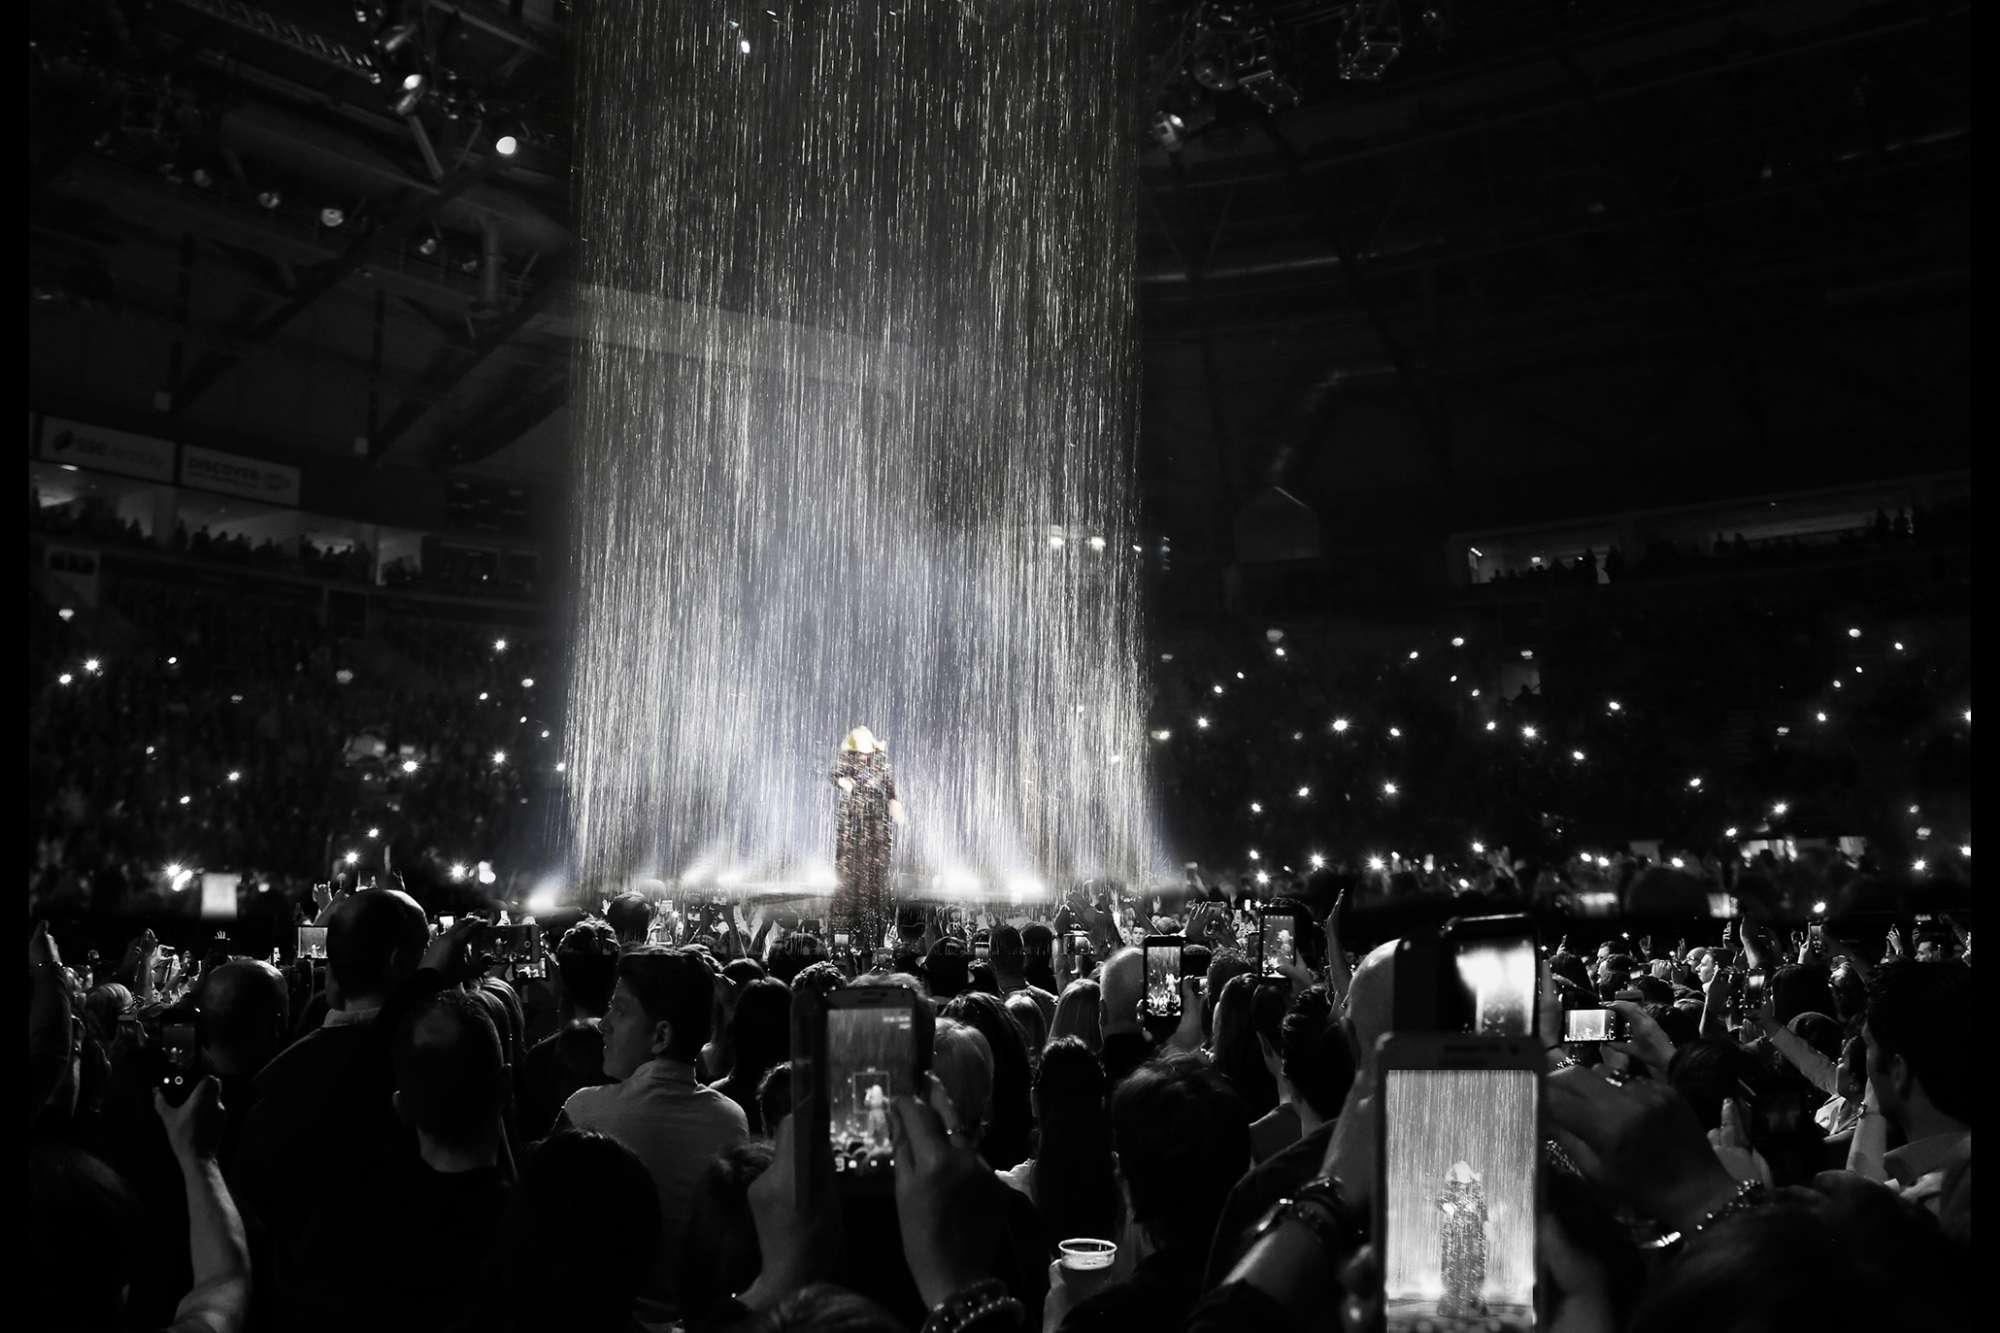 Adele – World Arena Tour